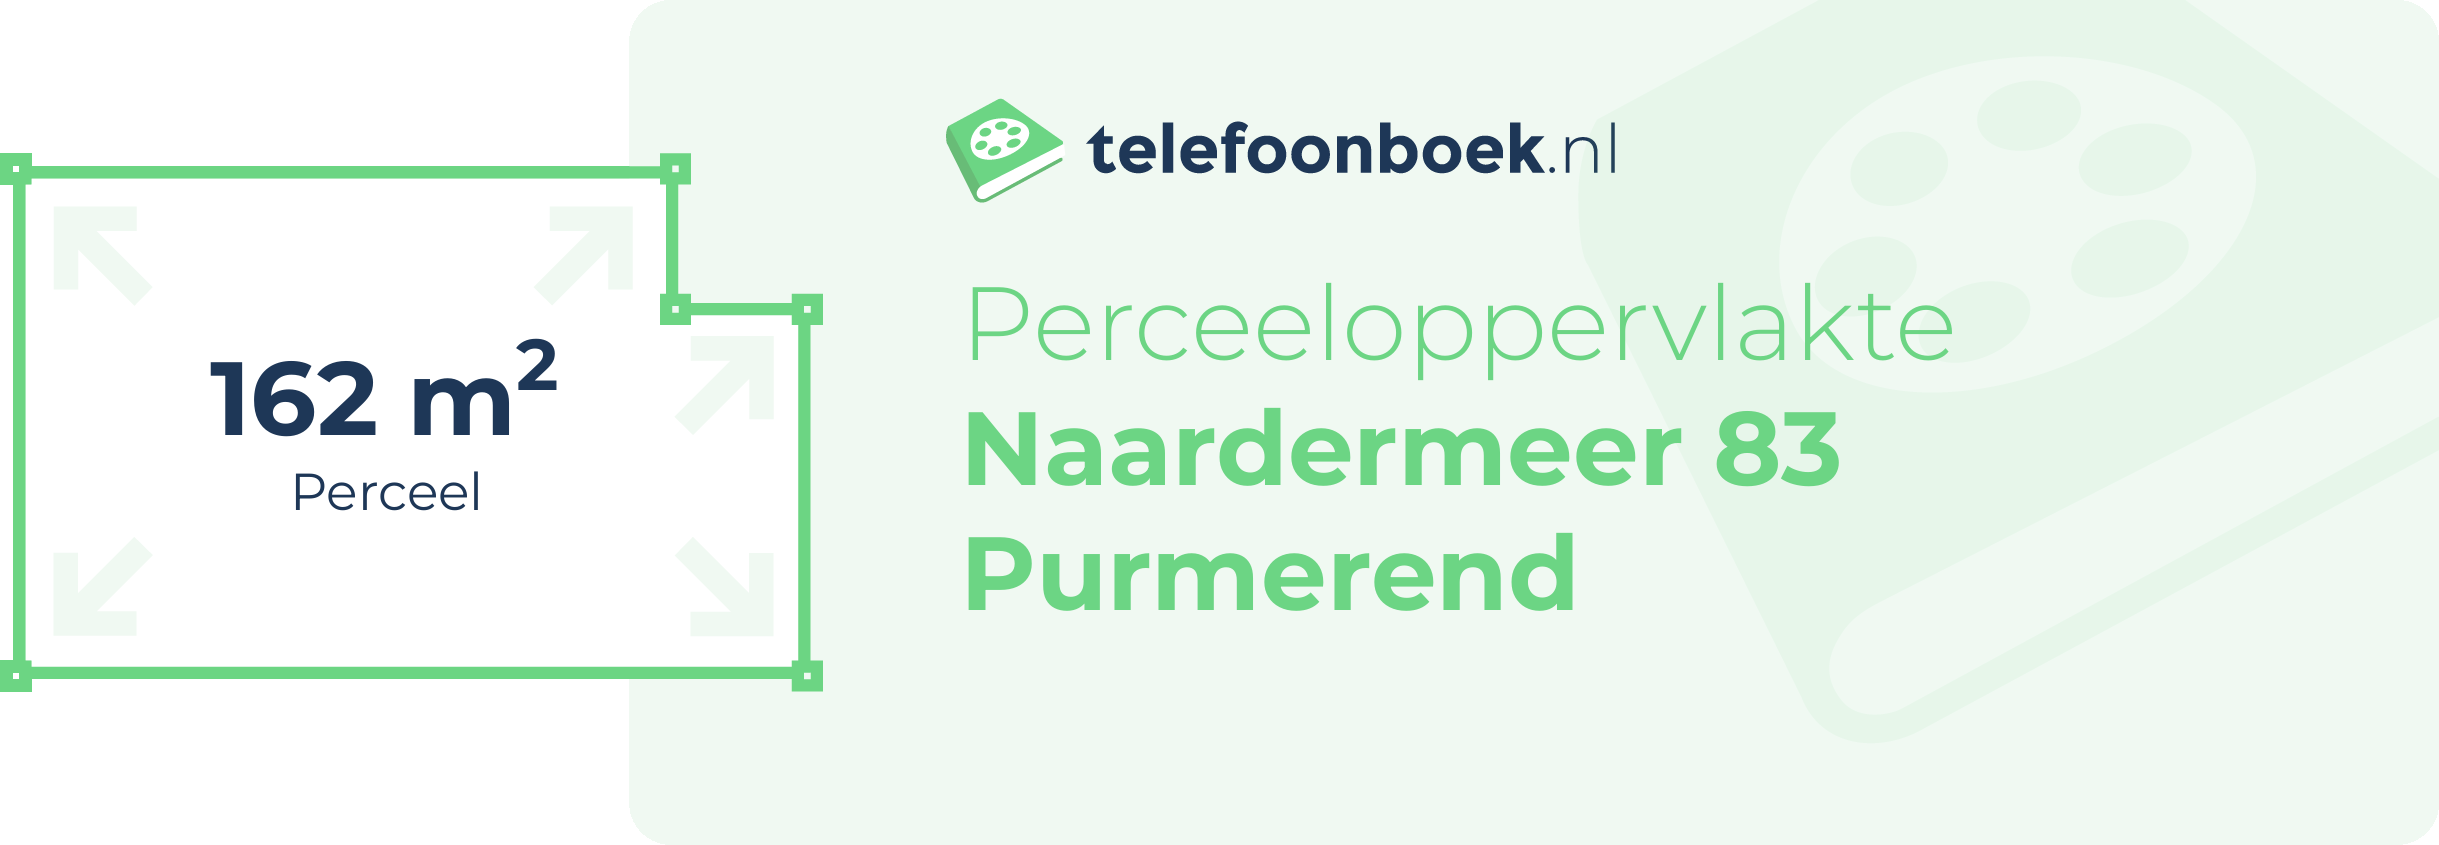 Perceeloppervlakte Naardermeer 83 Purmerend